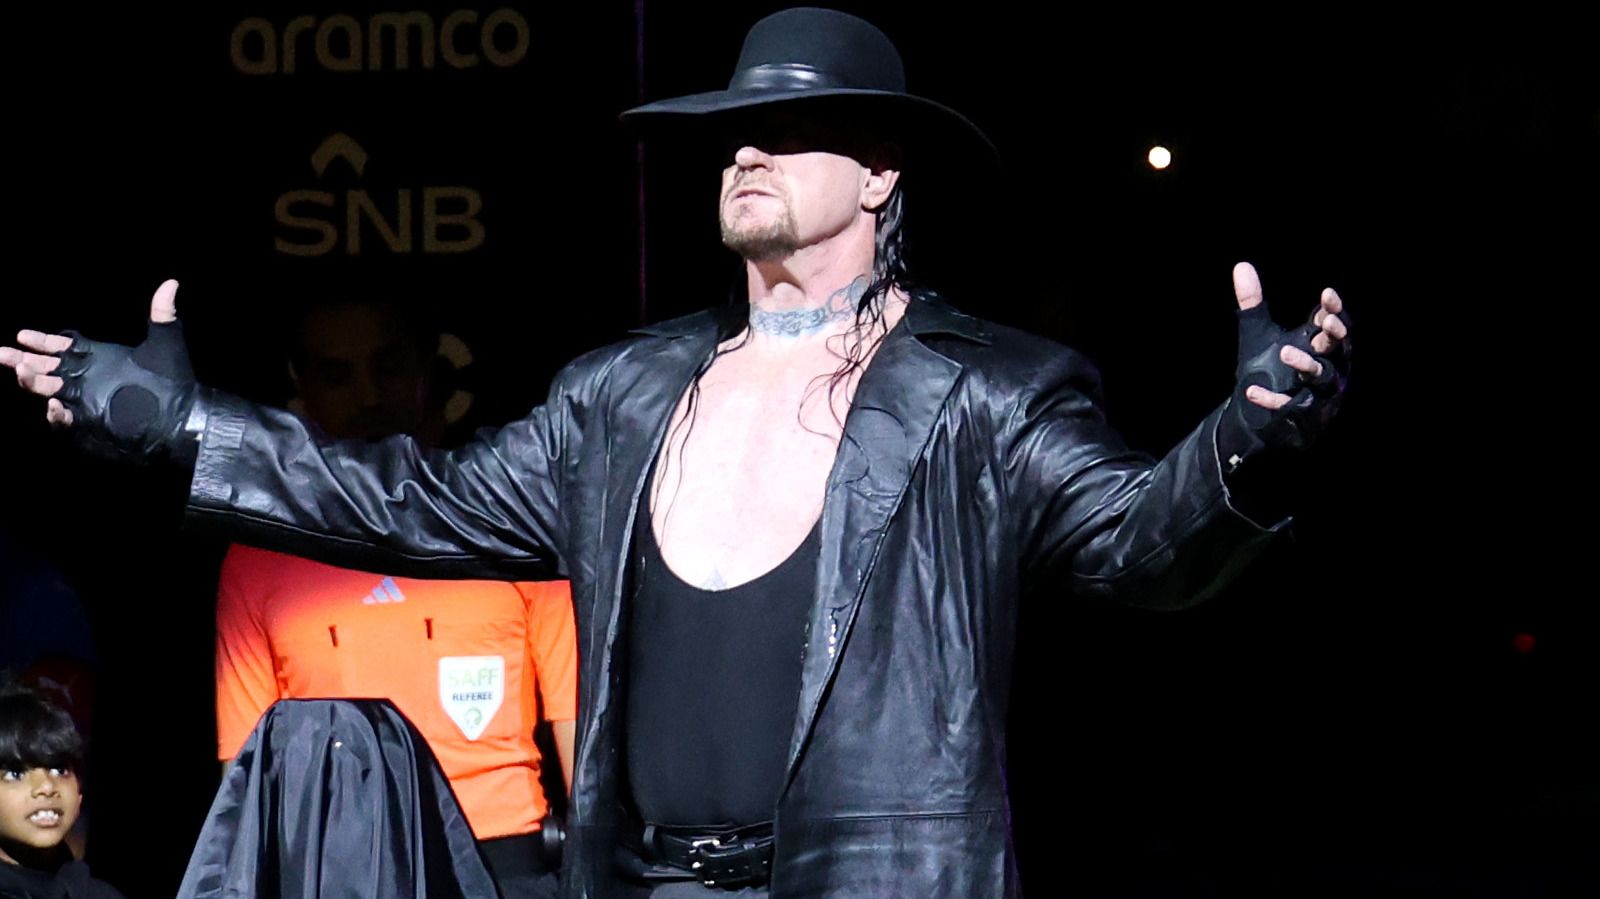 Triple H comparte un primer vistazo exclusivo al escape del Undertaker en WWE Experience, que se inaugurará esta semana